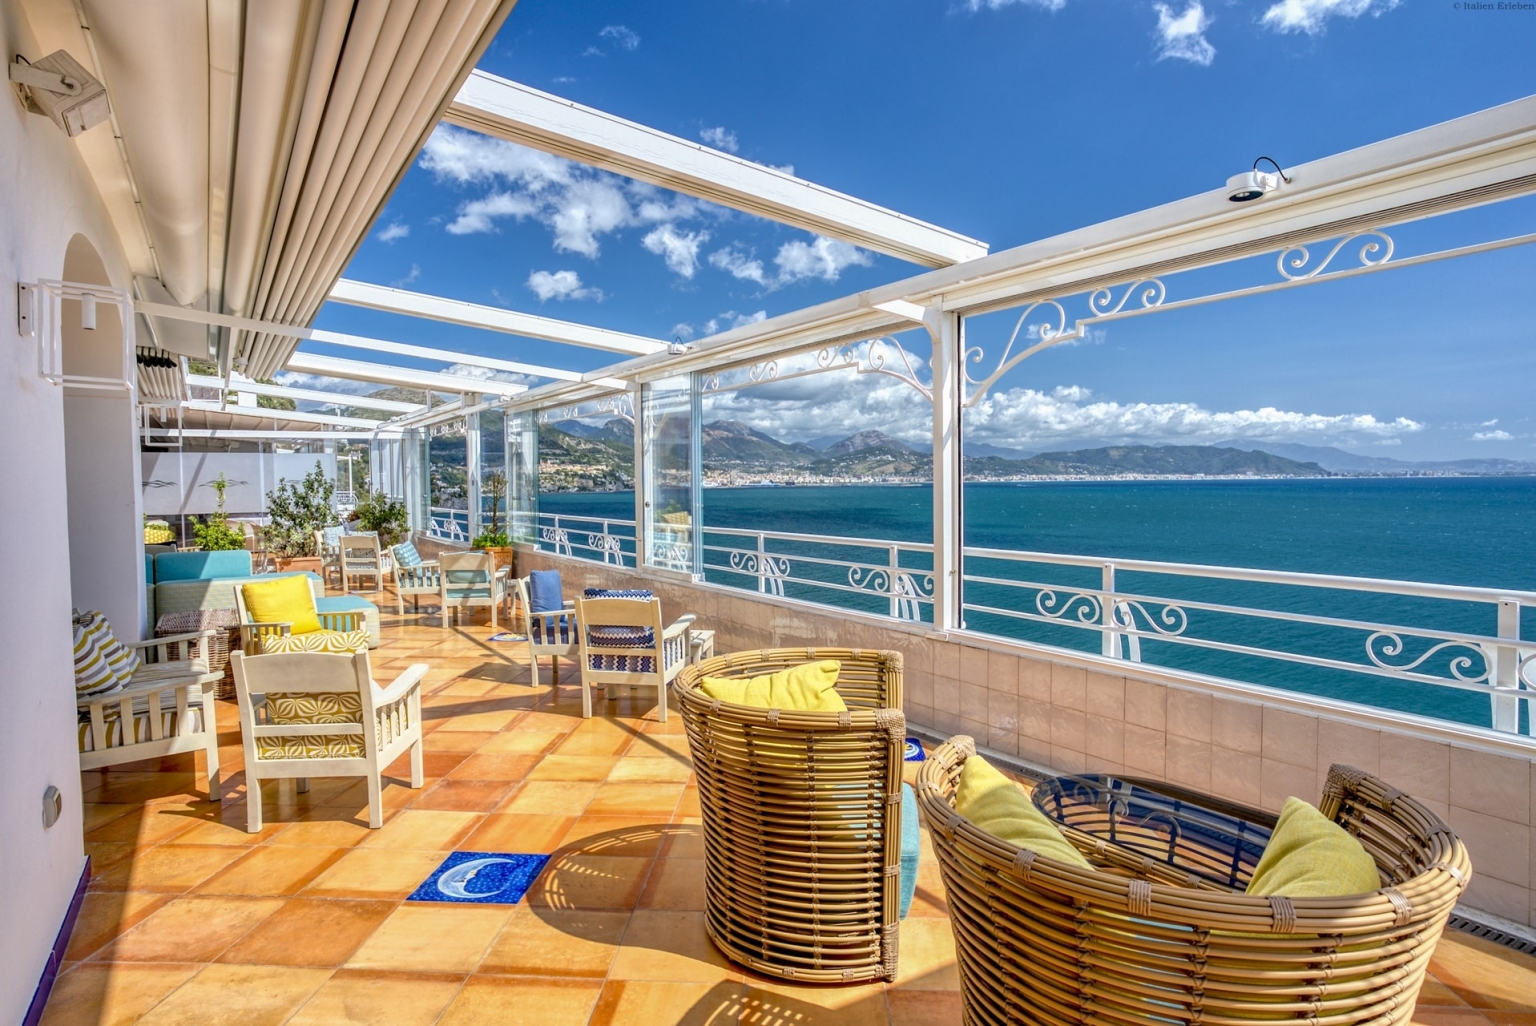 Kampanien Hotel Cetus Cetara Amalfiküste direkt am Meer Panoramalage Meerblick Terrasse Lounge Bar